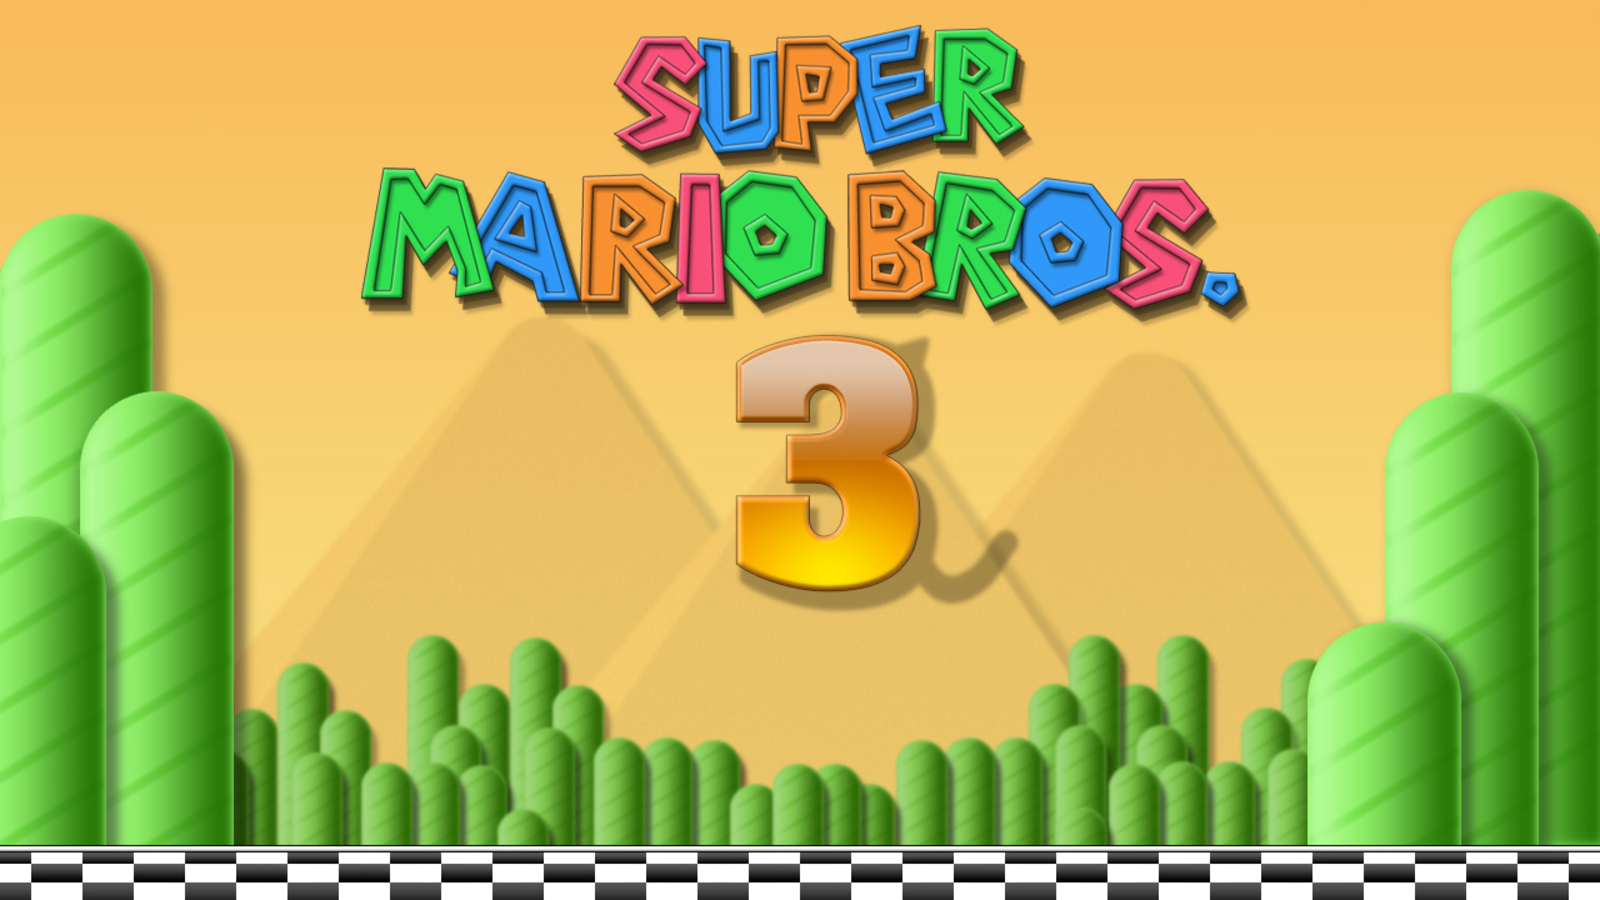 Download Super Mario Bros. 3 & Play Free